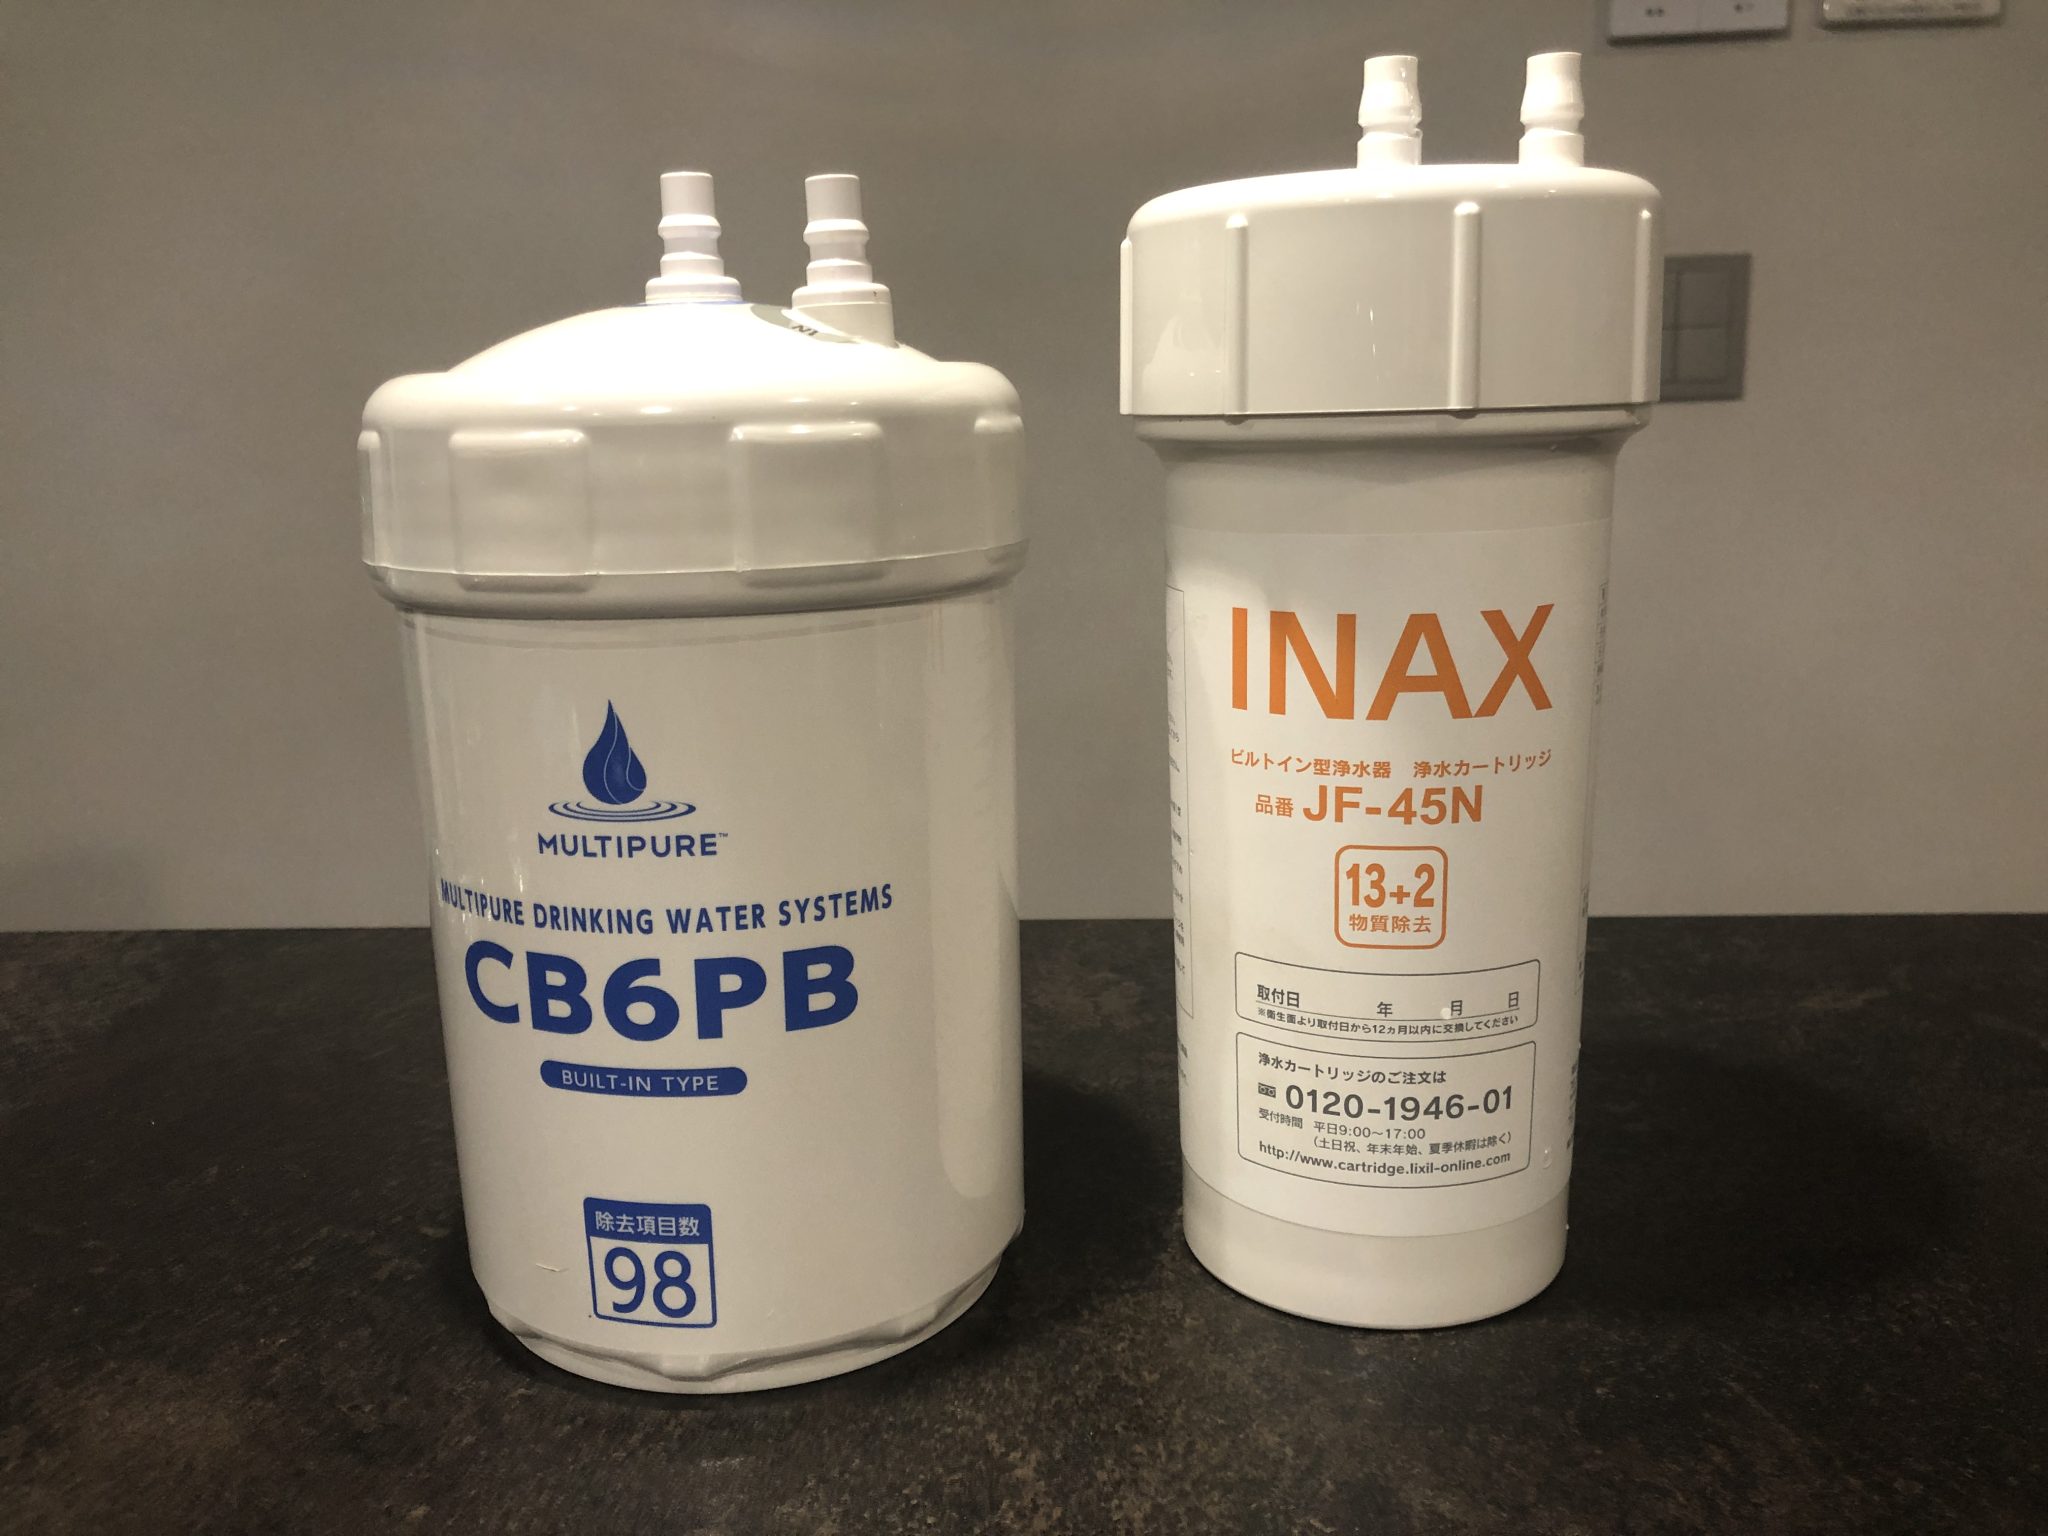 INAX 浄水カートリッジ JF-45N 13+2物質除去